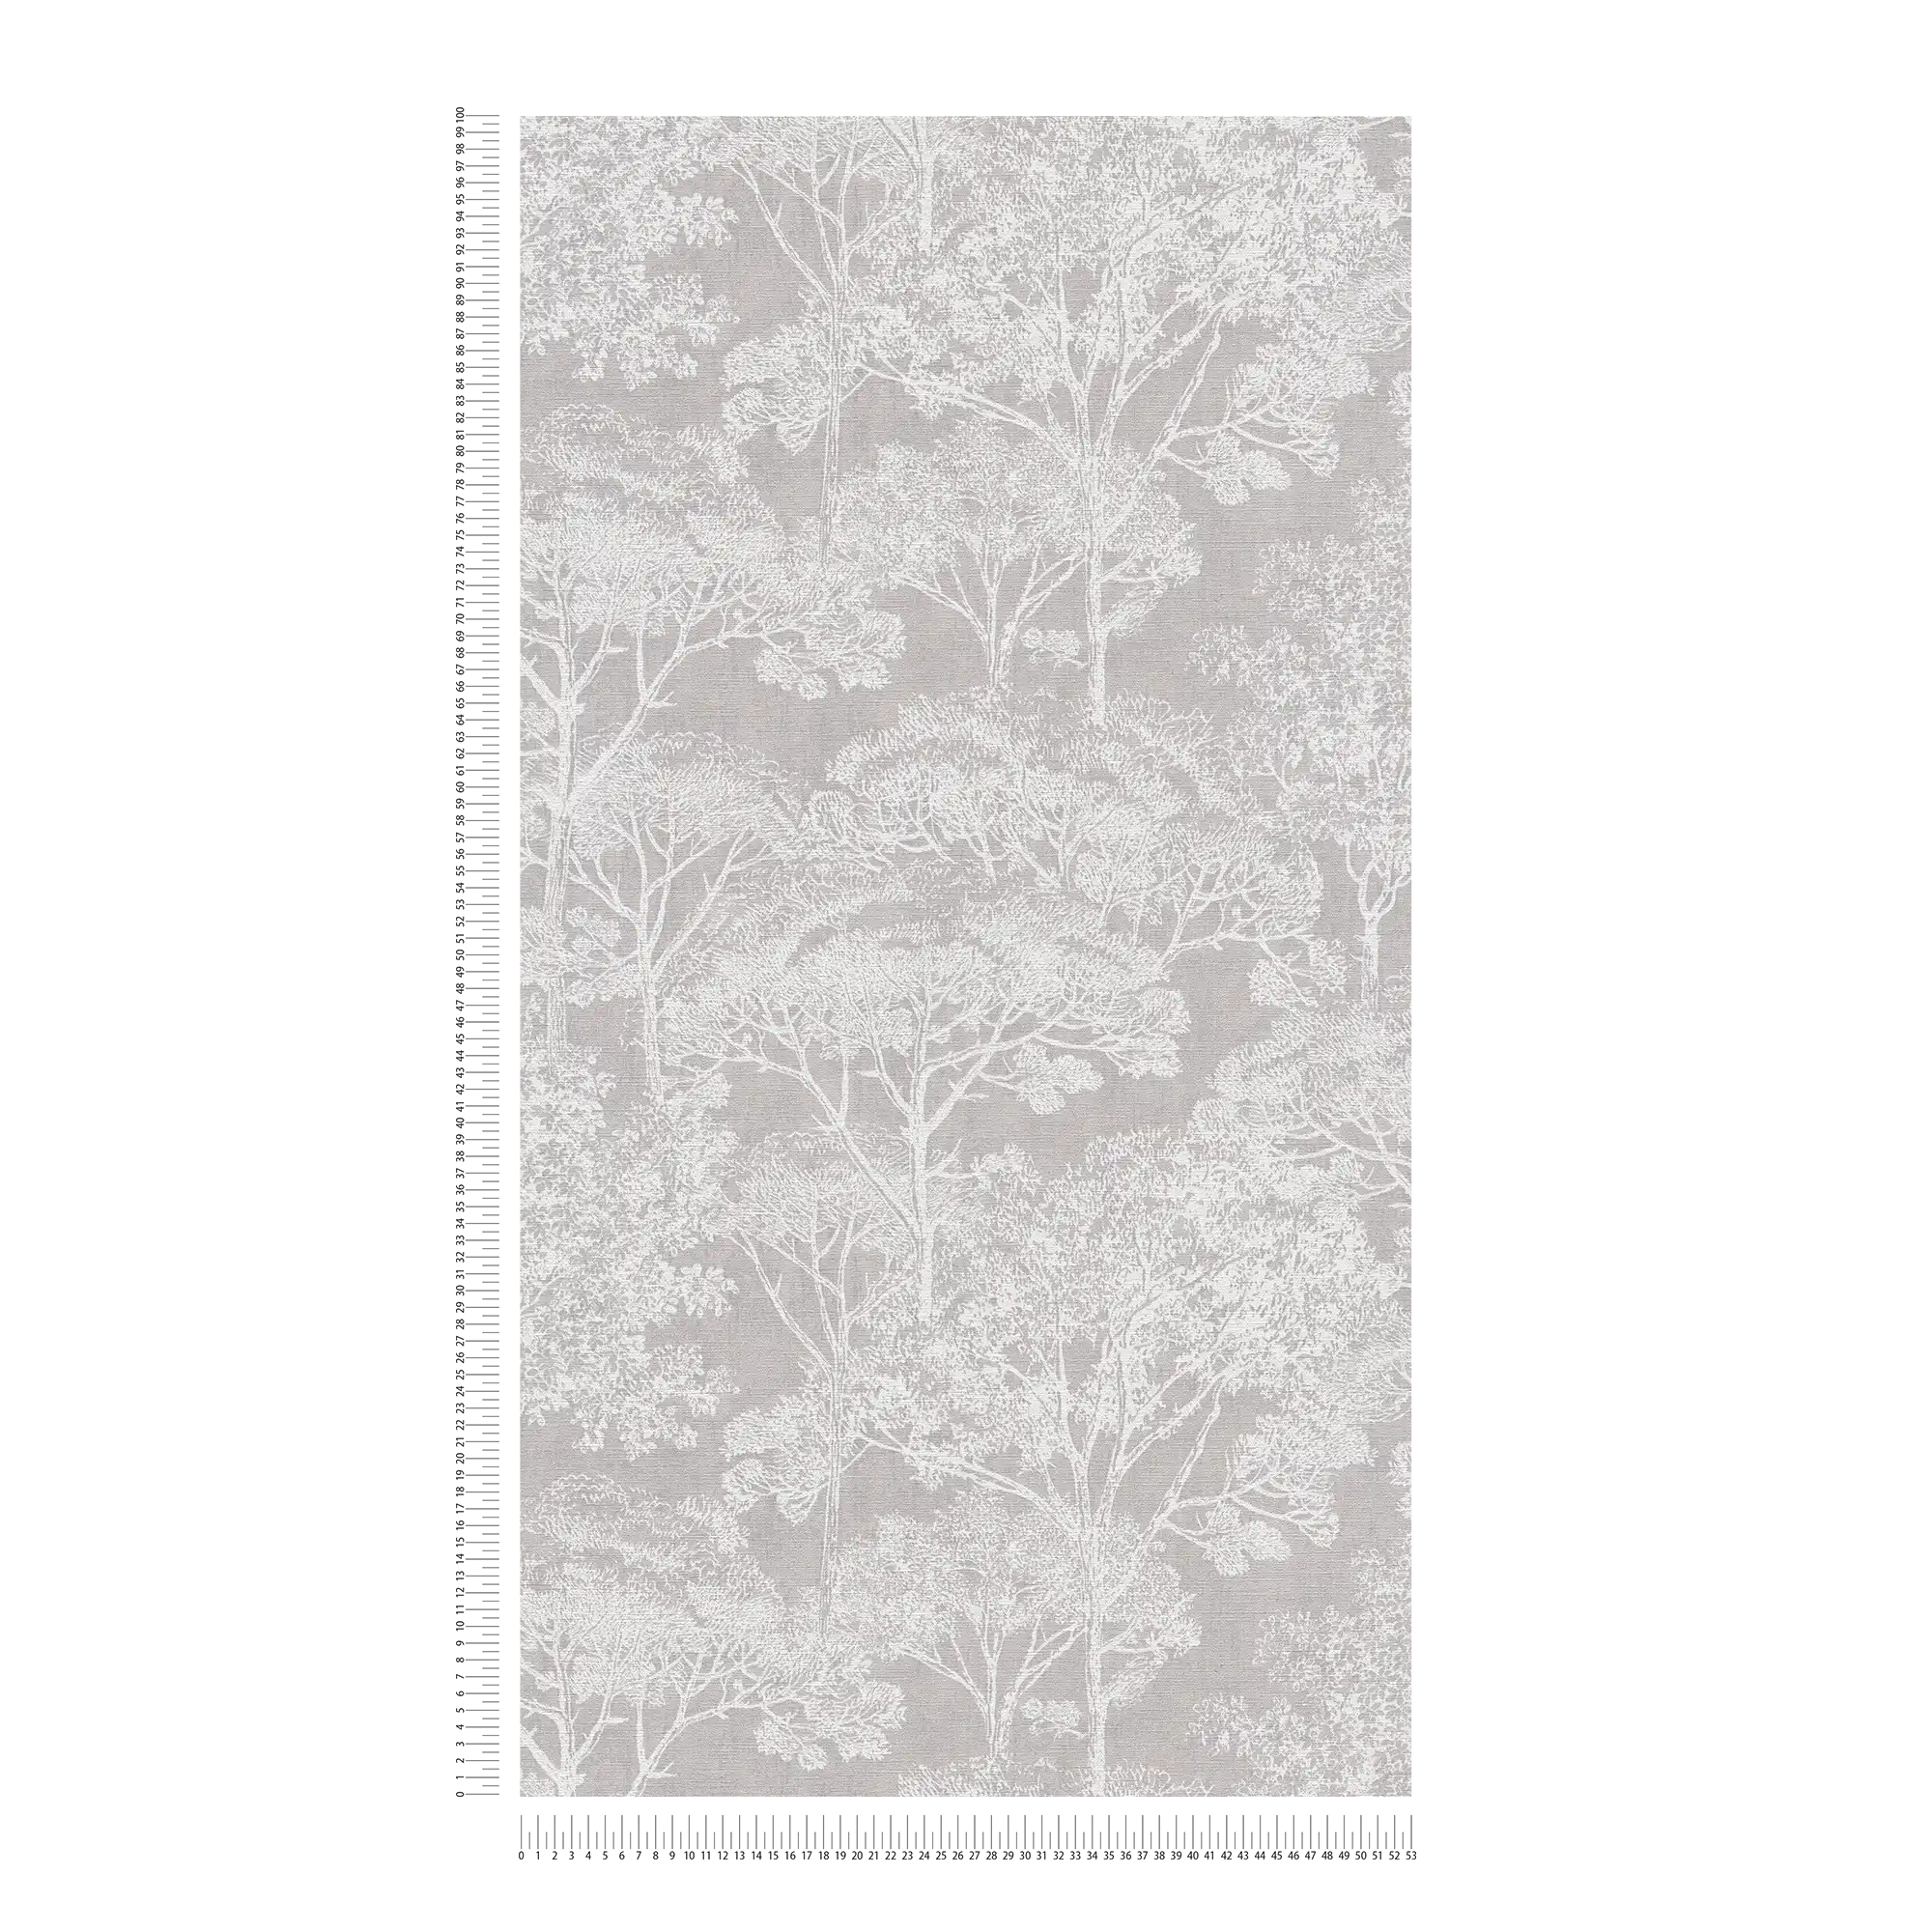             Carta da parati vintage in tessuto non tessuto con motivo ad albero con effetto metallizzato - crema, grigio, metallizzato
        